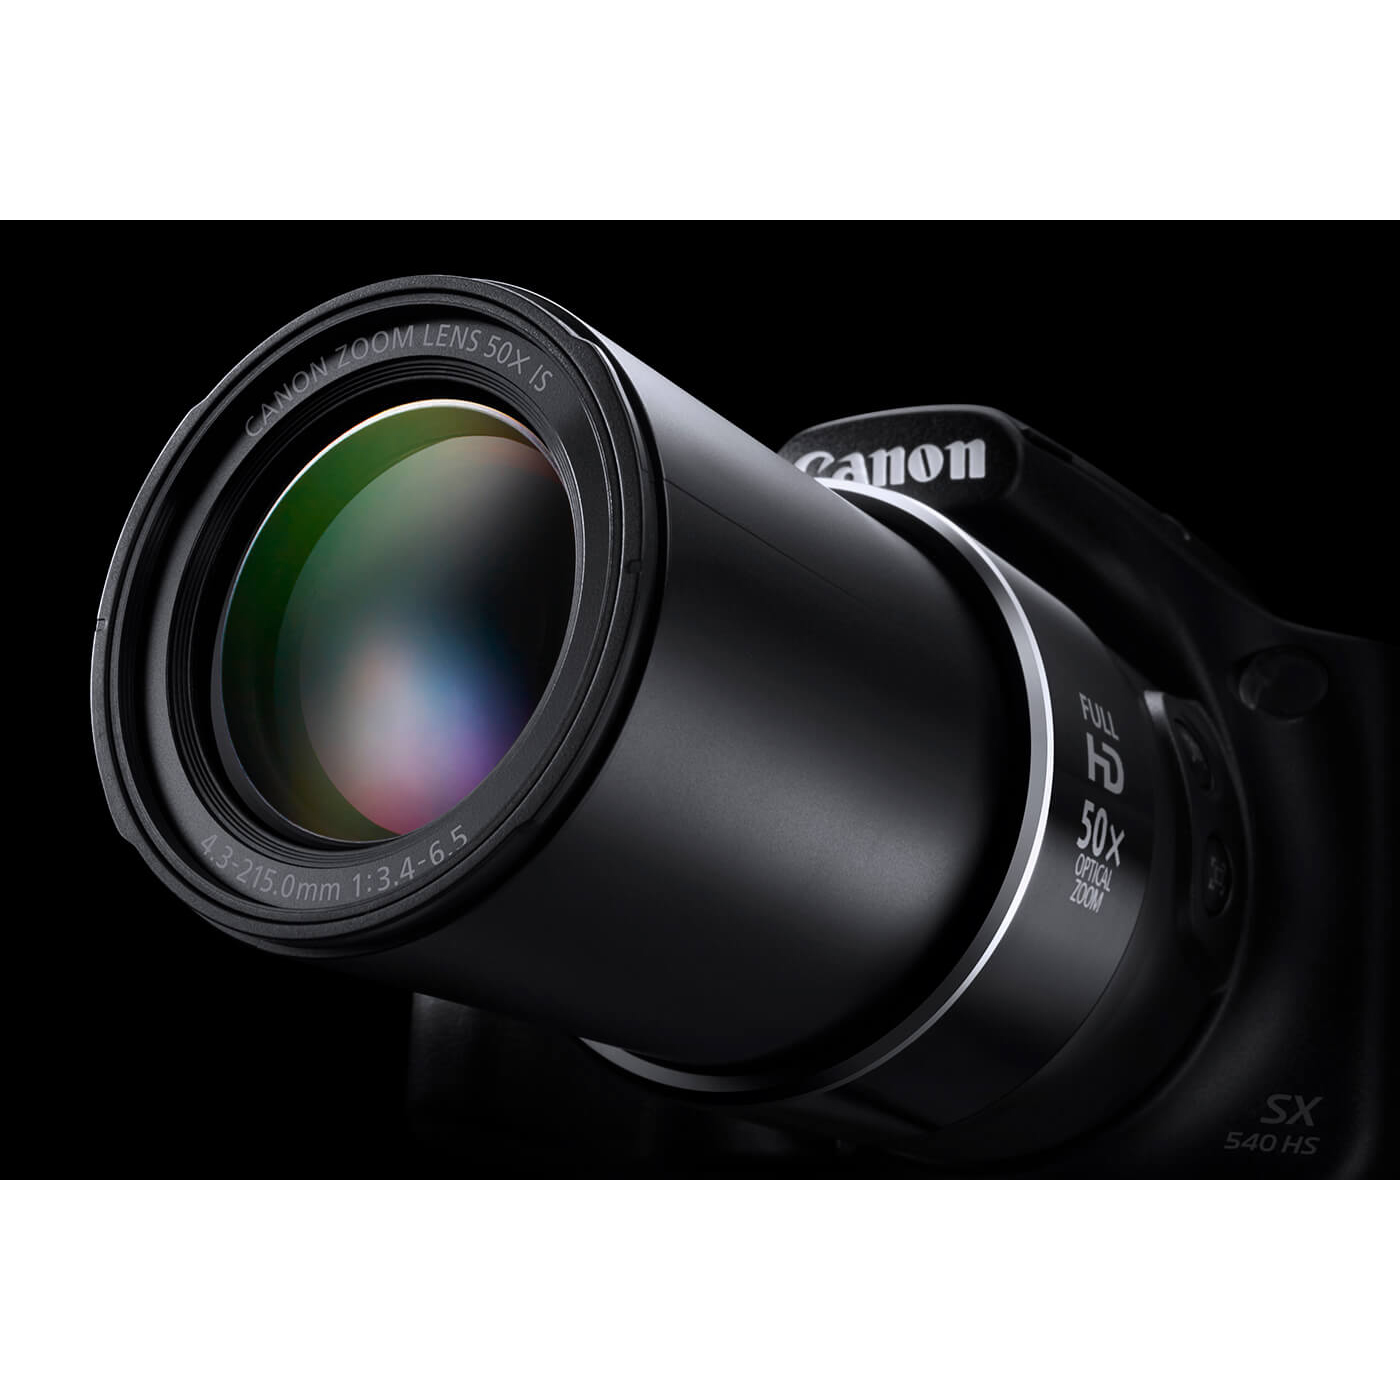 قیمت و خرید دوربین دیجیتال کانن مدل PowerShot SX540 HS